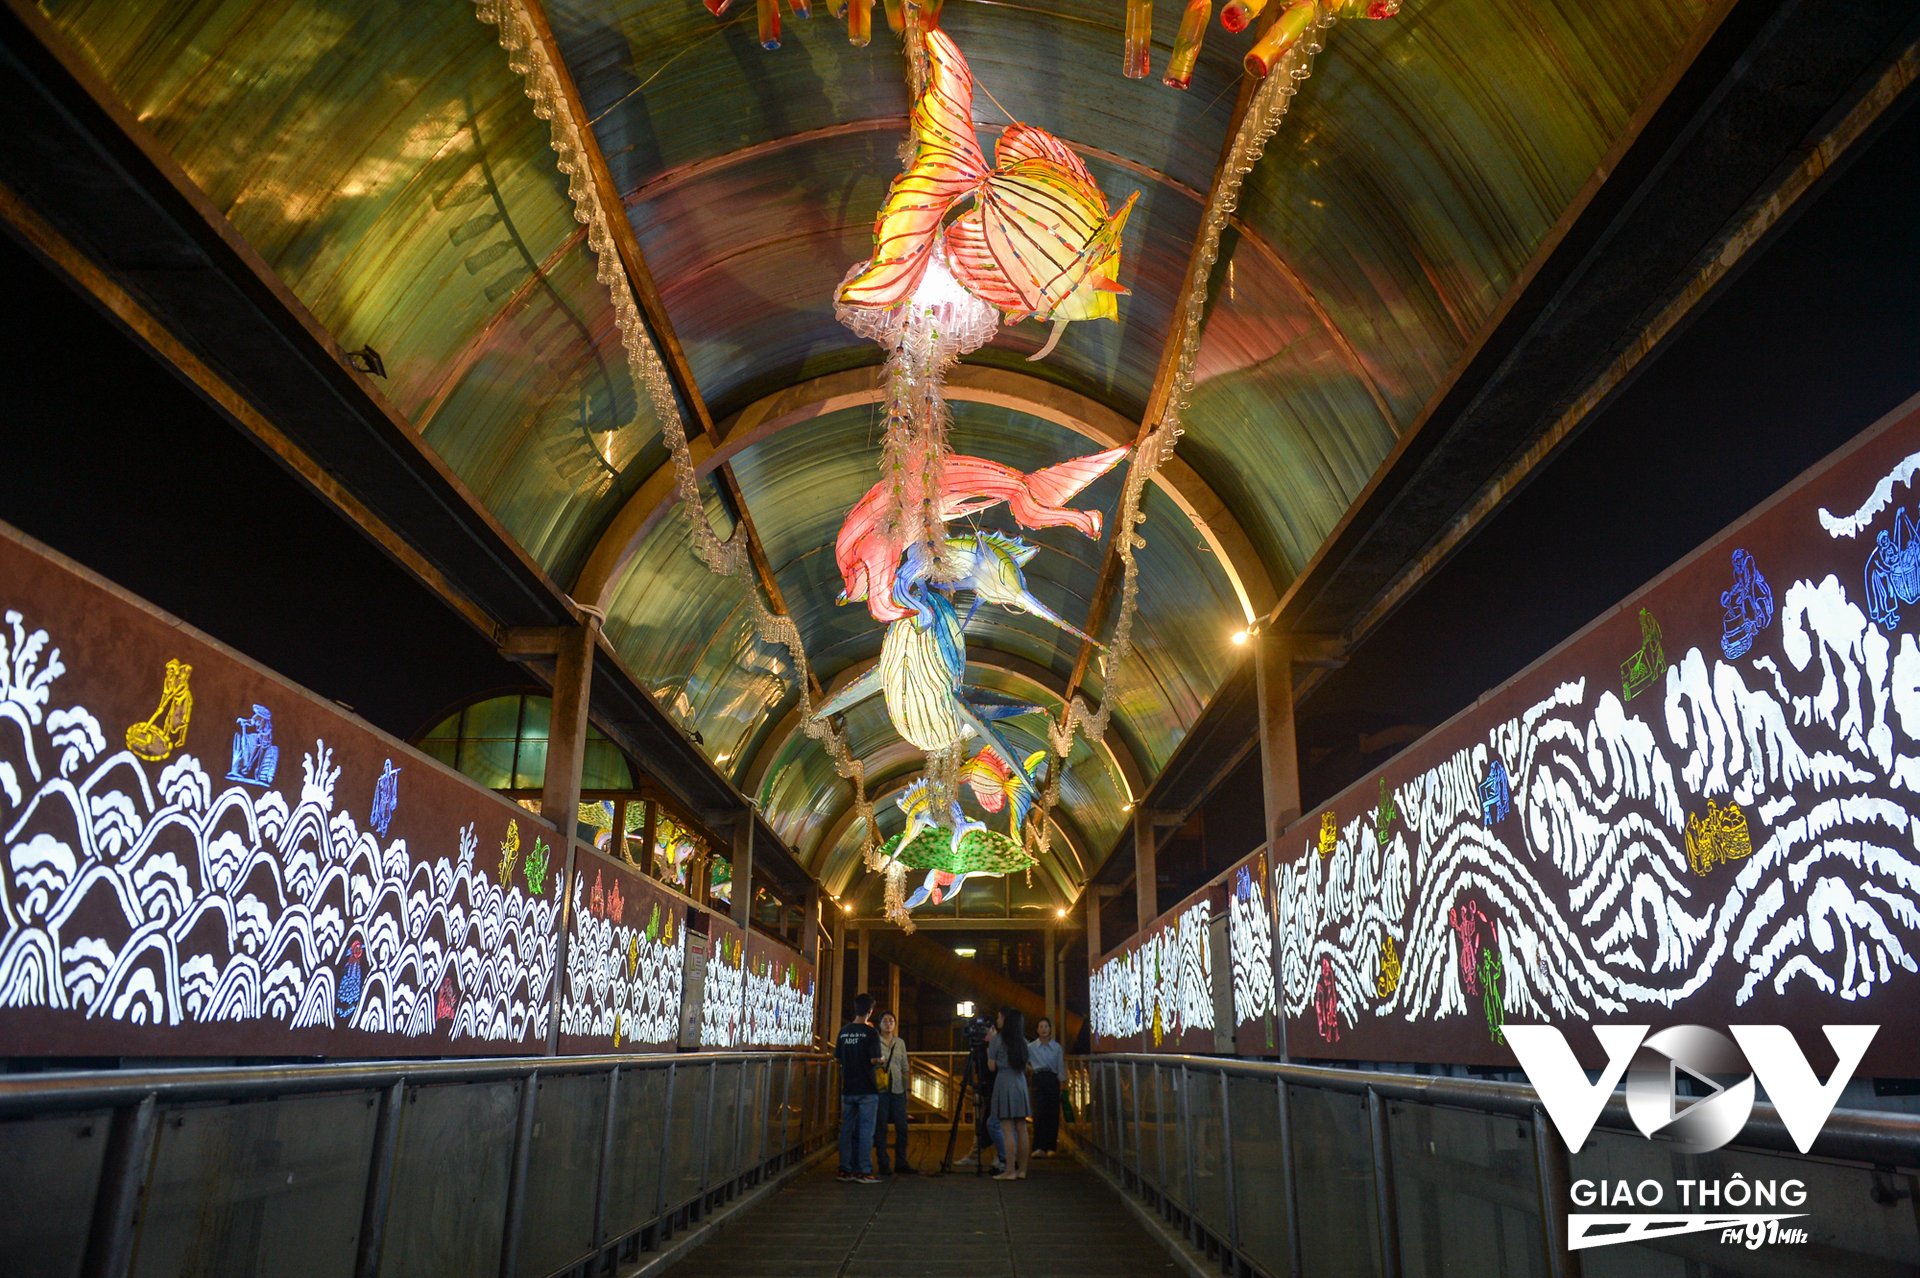 Với chiều dài cầu đi bộ 44,6m, các họa sĩ đã thể hiện các tác phẩm nghệ thuật, kết hợp với ánh sáng, biến cầu đi bộ giống như một đường 'hầm thủy cung'.